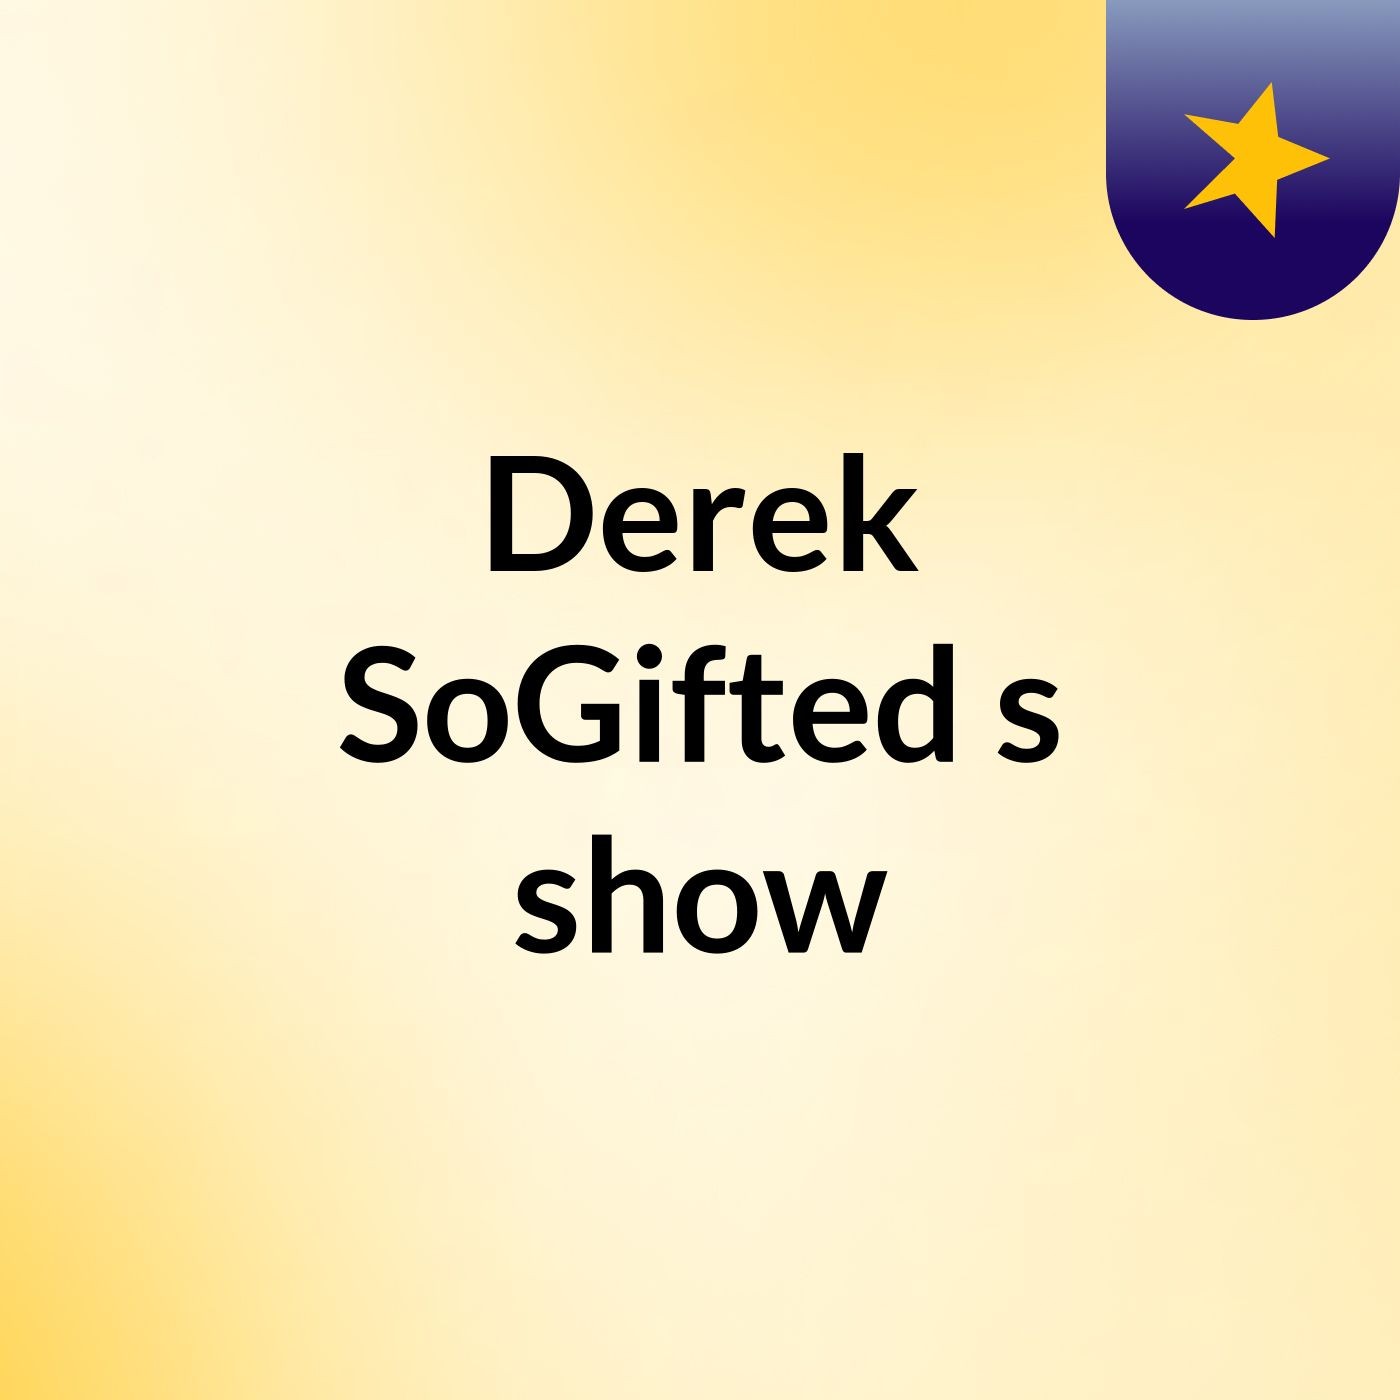 Derek SoGifted's show